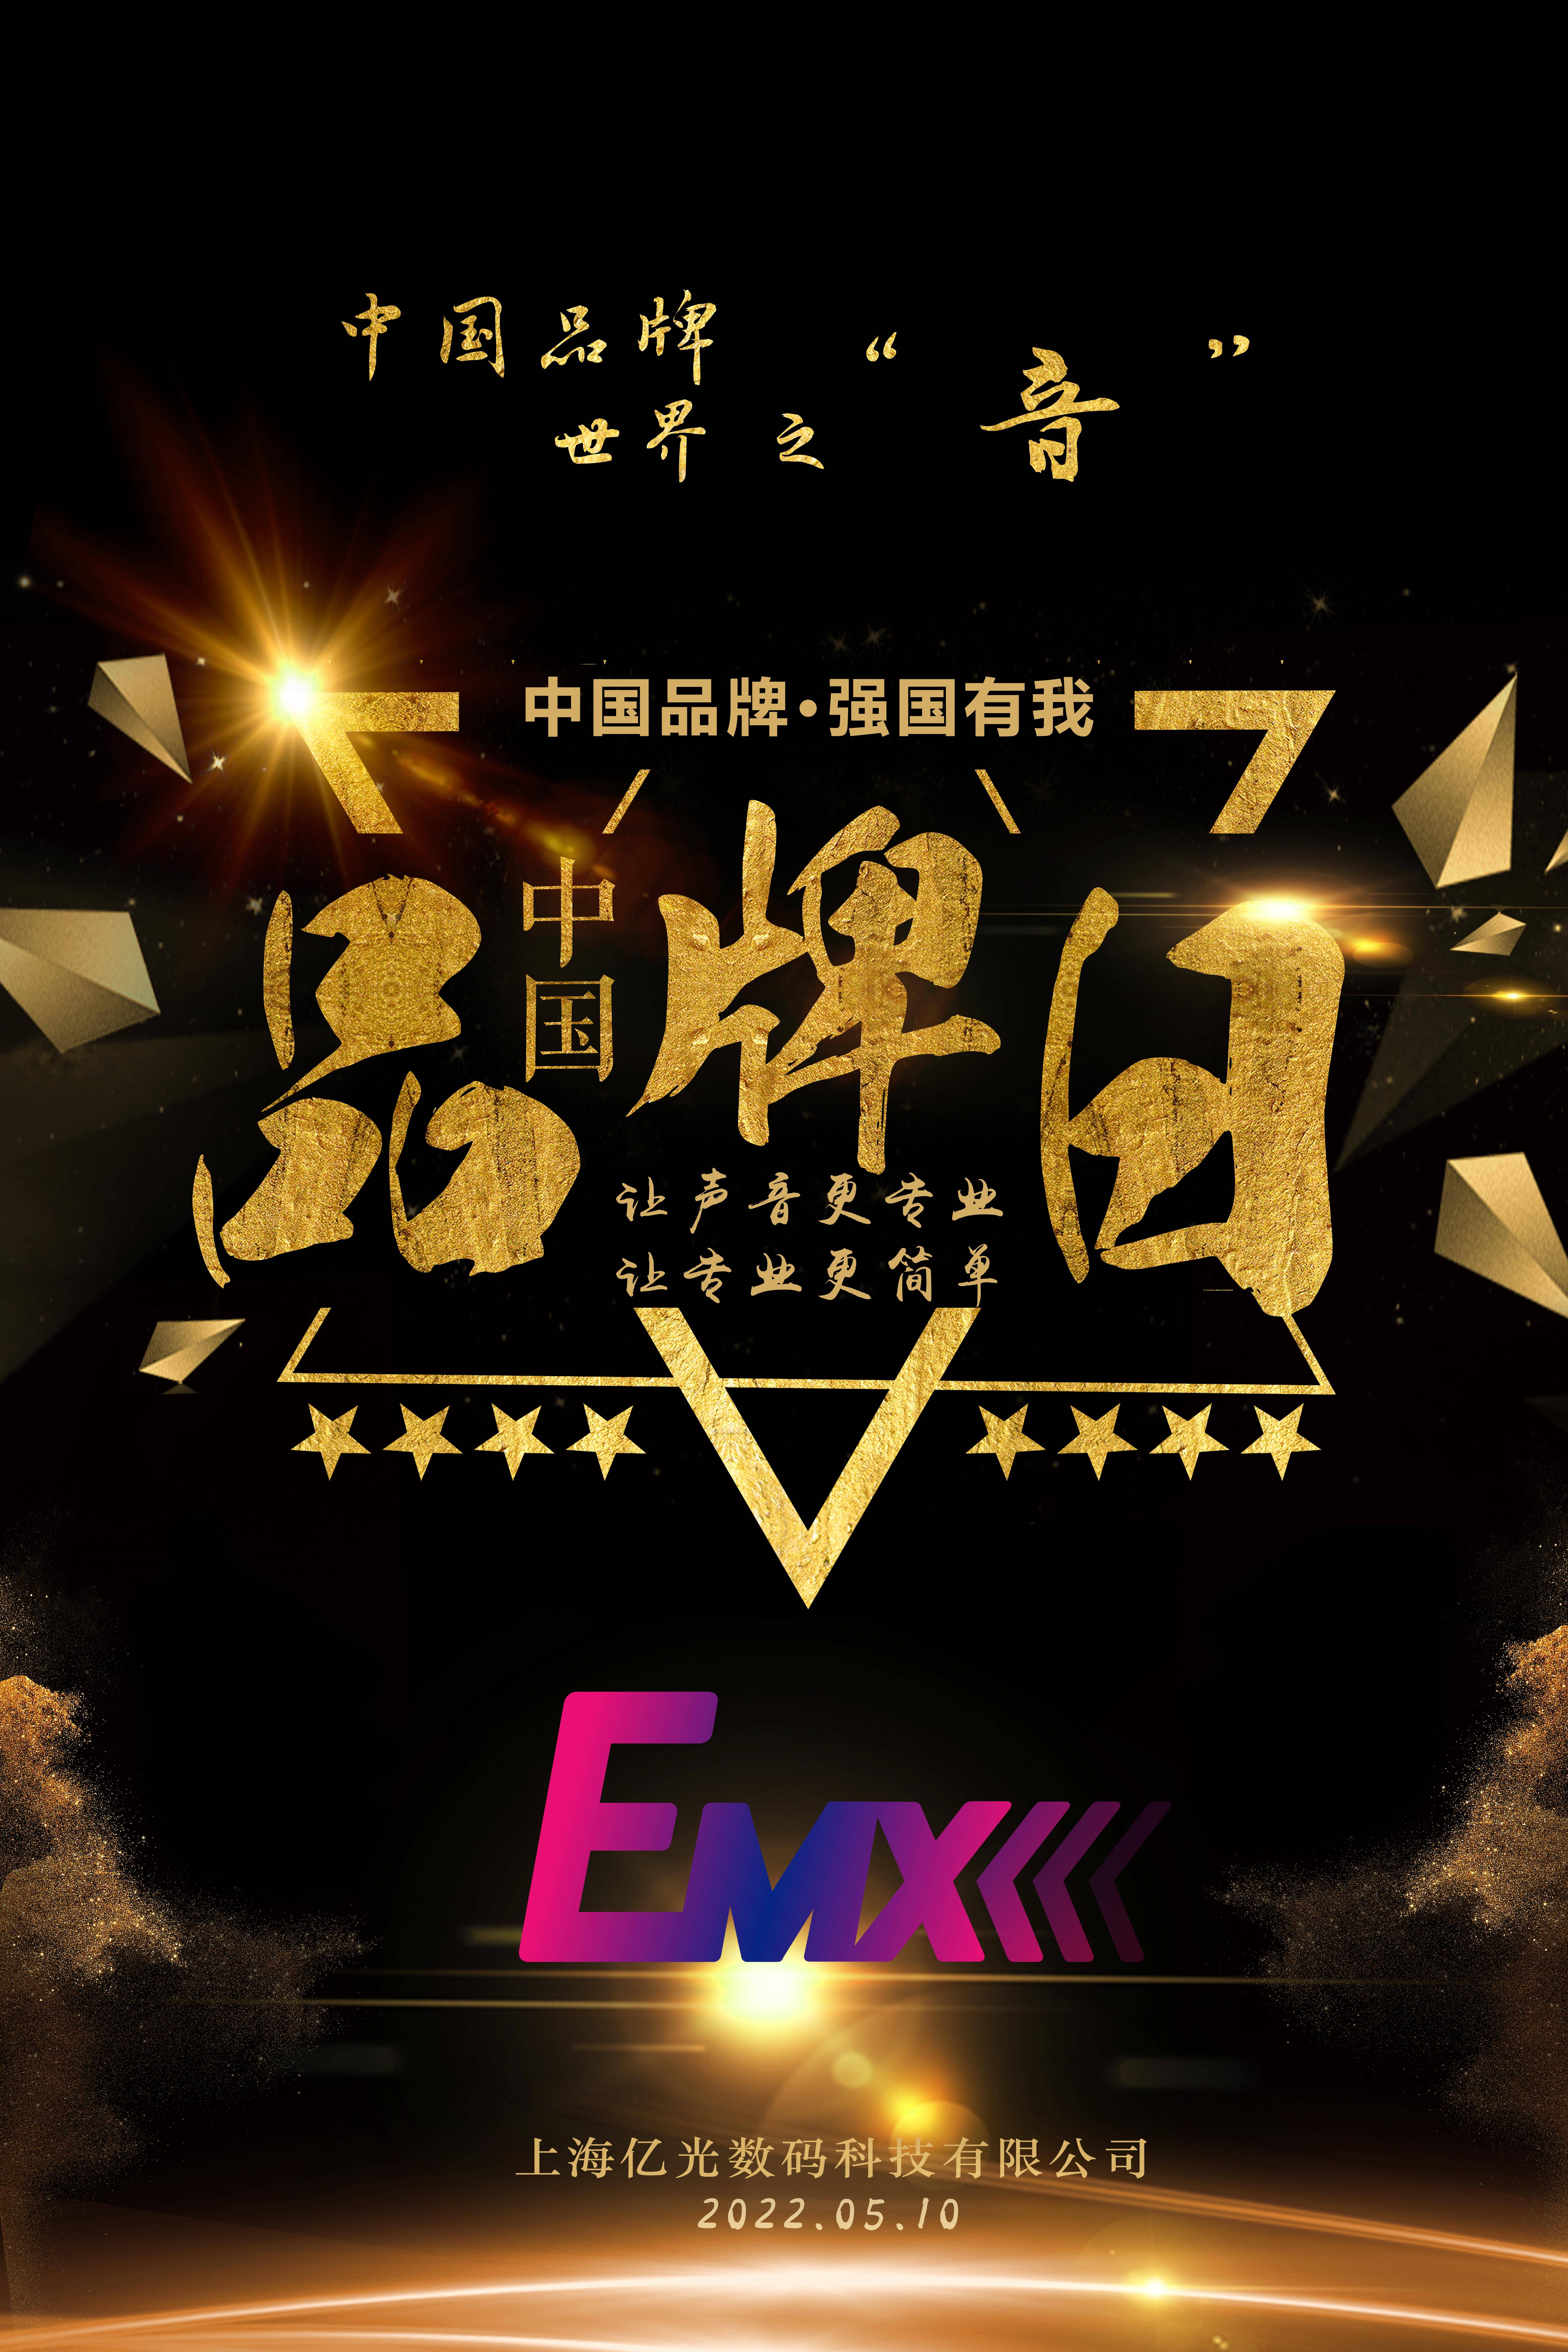 中国品牌日， 我为EMX音响代言。品牌崛起，筑梦